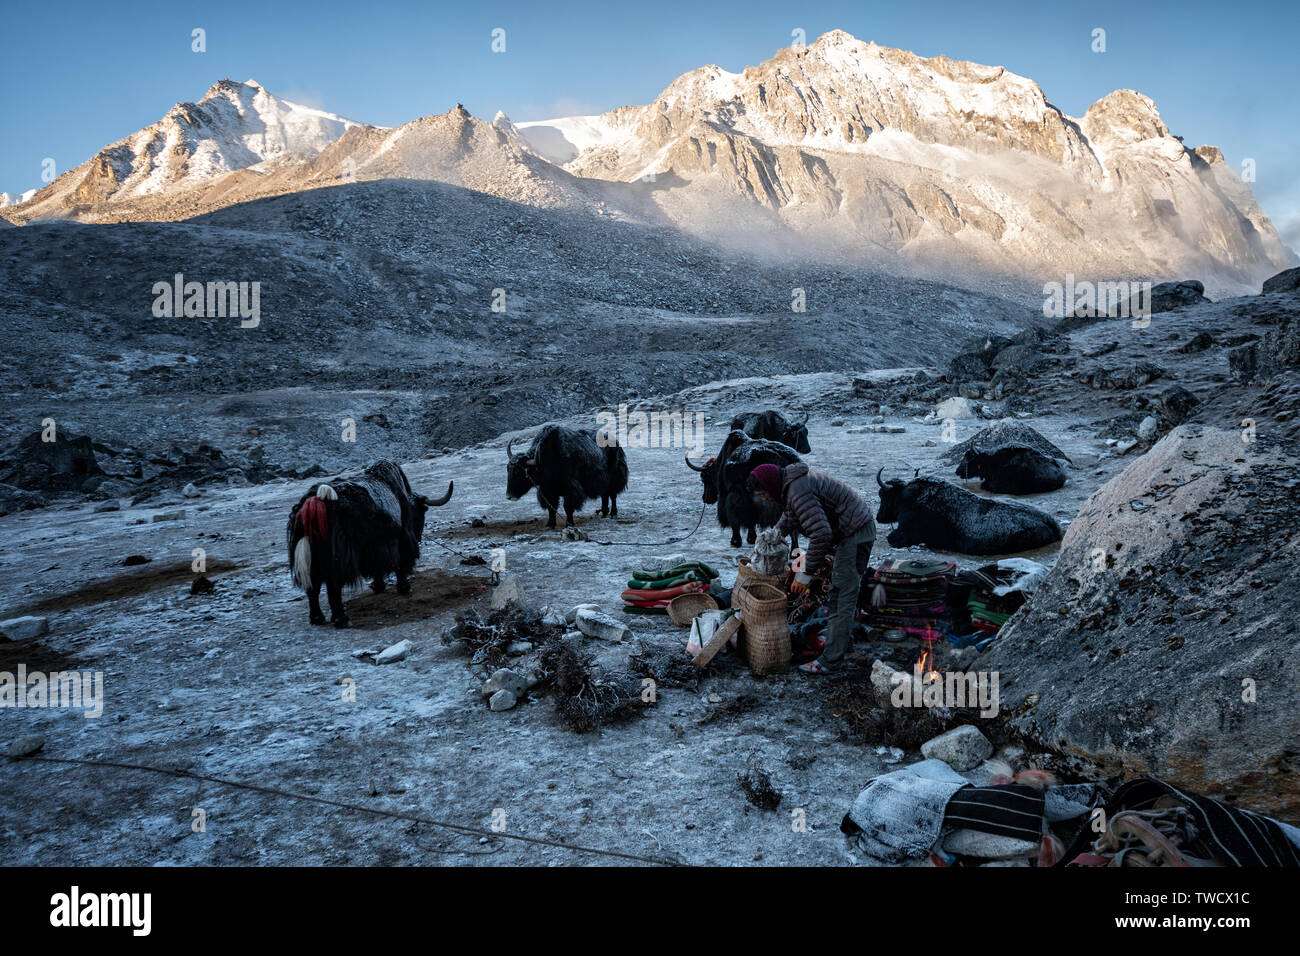 Le jour se lève sur le camp de froid Jichu Dramo, Wangdue Phodrang, district, le Bhoutan Trek Snowman Banque D'Images